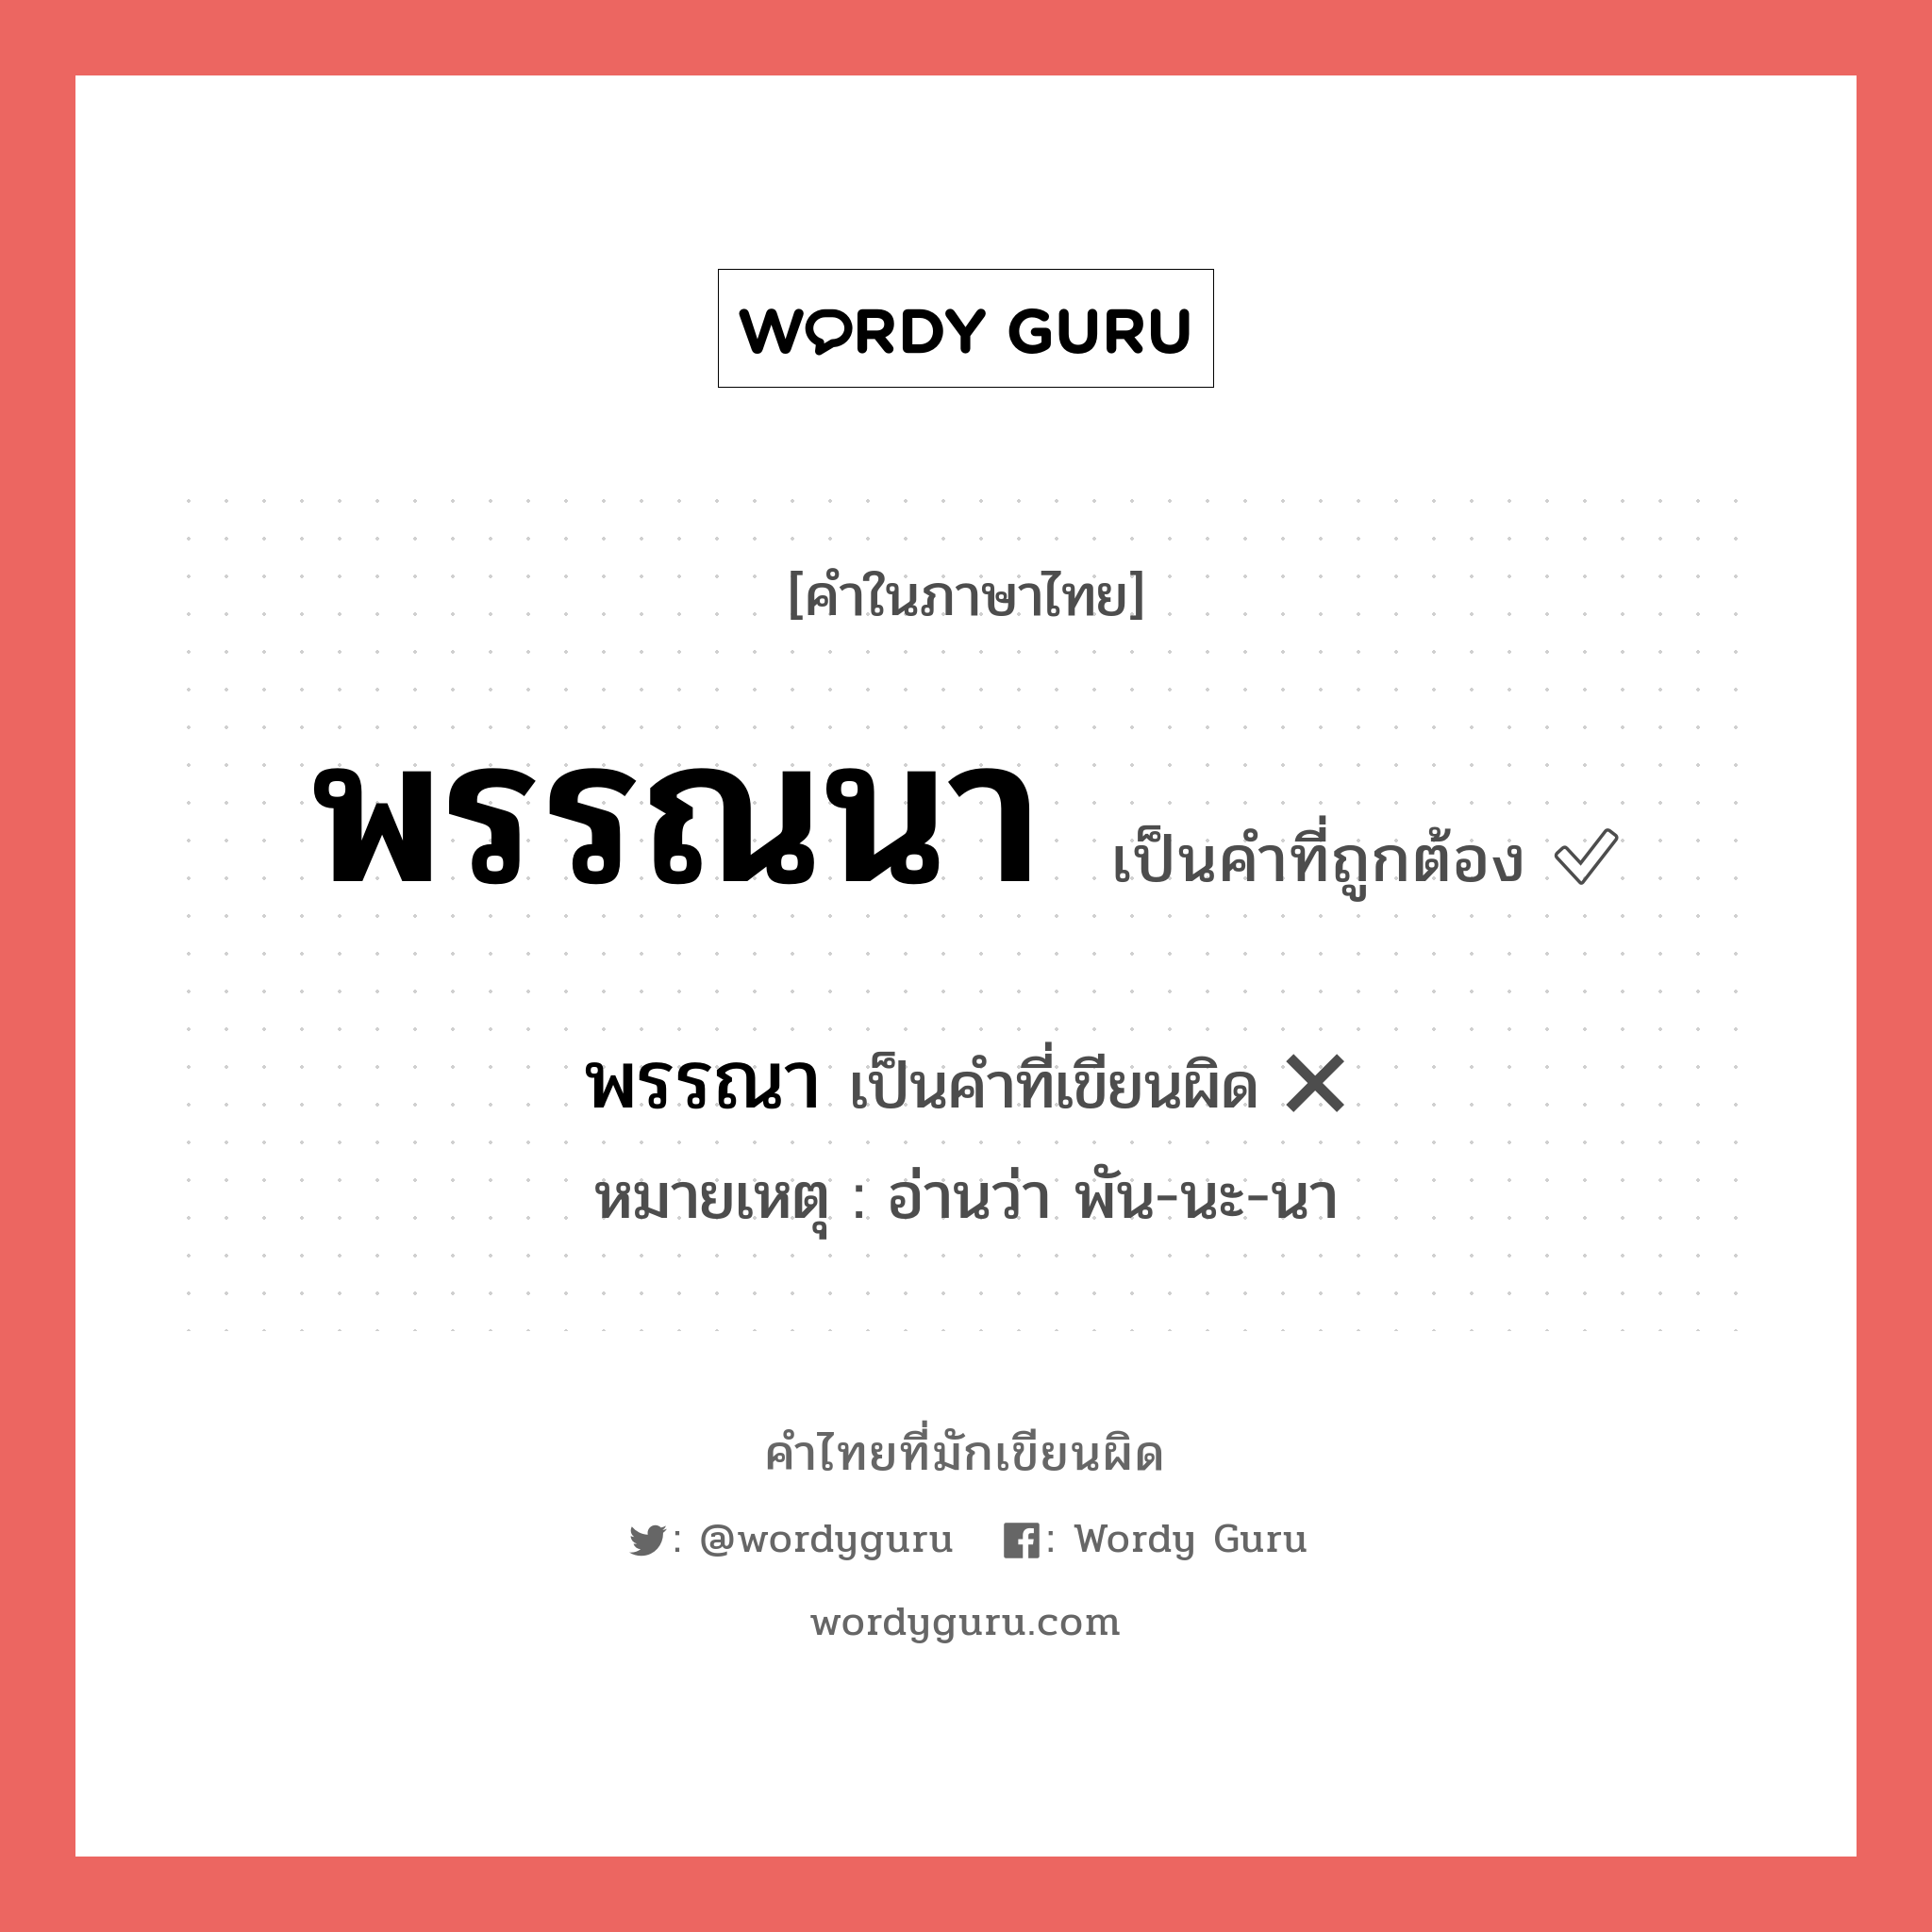 พรรณา หรือ พรรณนา คำไหนเขียนถูก?, คำในภาษาไทยที่มักเขียนผิด พรรณา คำที่ผิด ❌ พรรณนา หมายเหตุ อ่านว่า พัน-นะ-นา